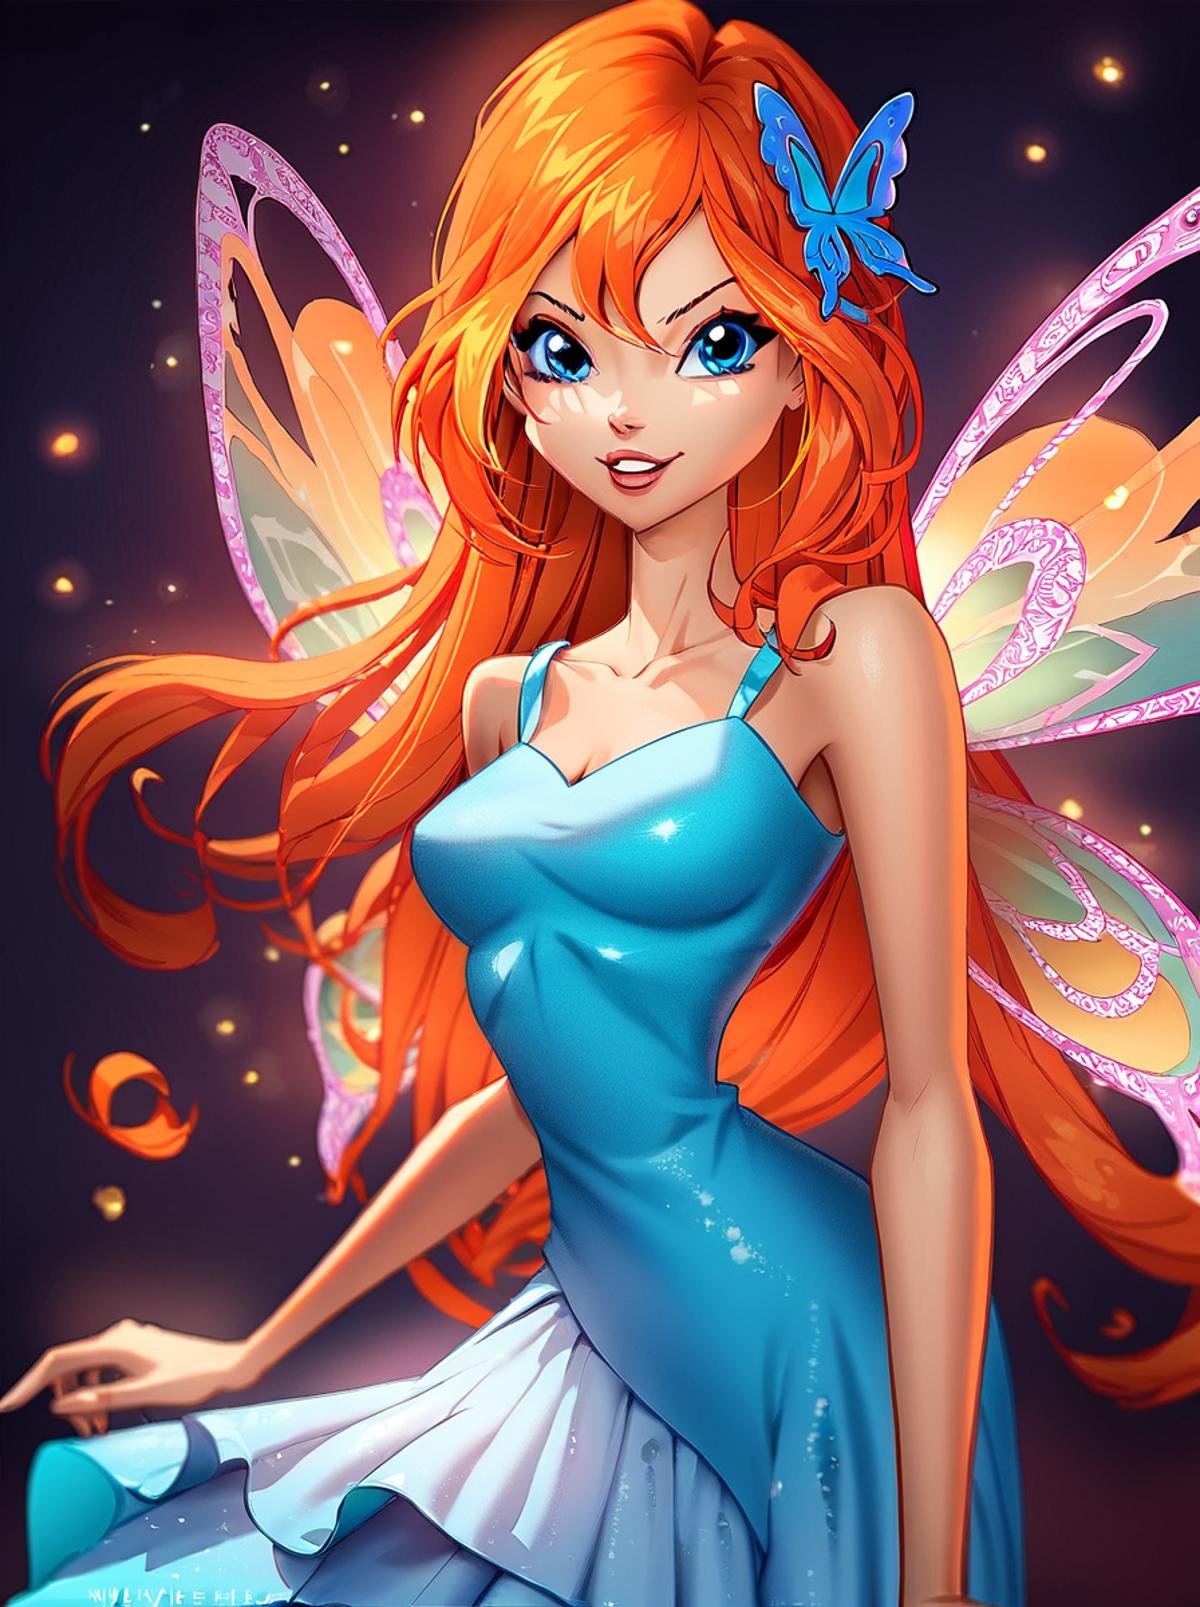 score_9, score_8_up, score_7_up, source_cartoon, <lora:WinxAndTrixPony:0.8>,winxtrix,,bloom,,cartoon style, butterfly wings, wings, long hair, 1girl, solo, dress, orange hair, fairy, blue eyes, hair ornament